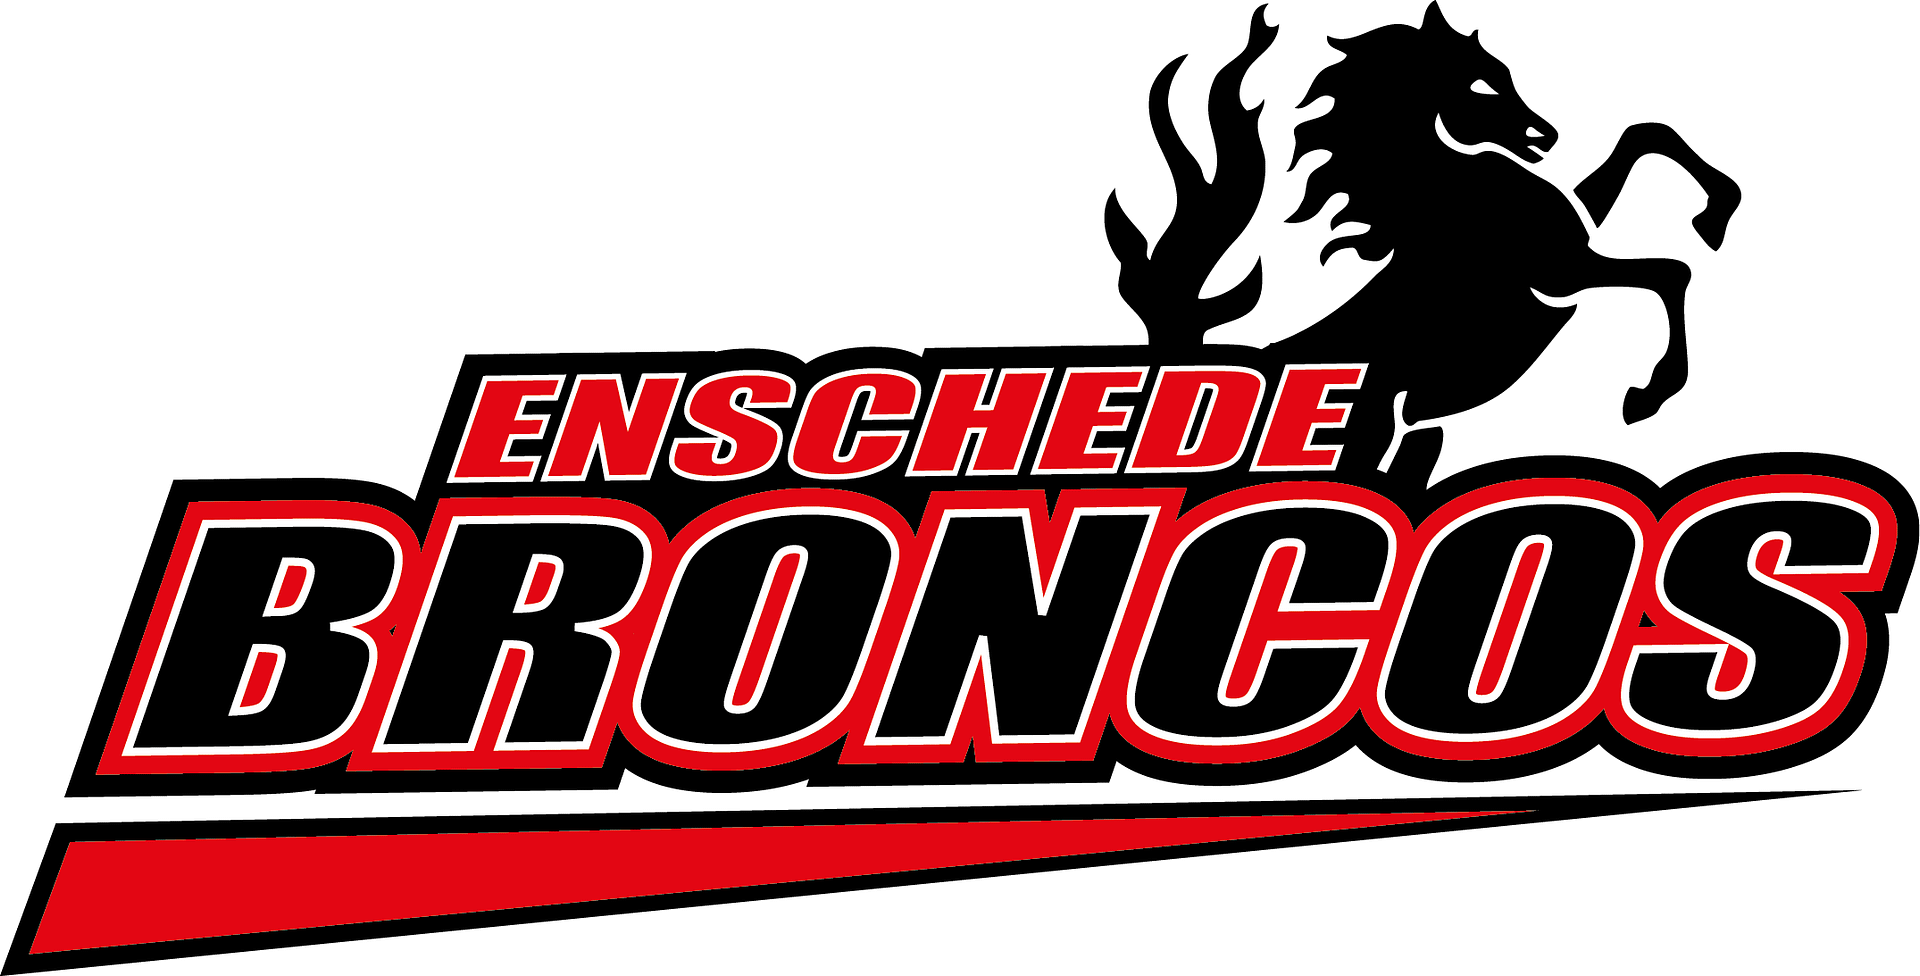 Enschede broncos logo